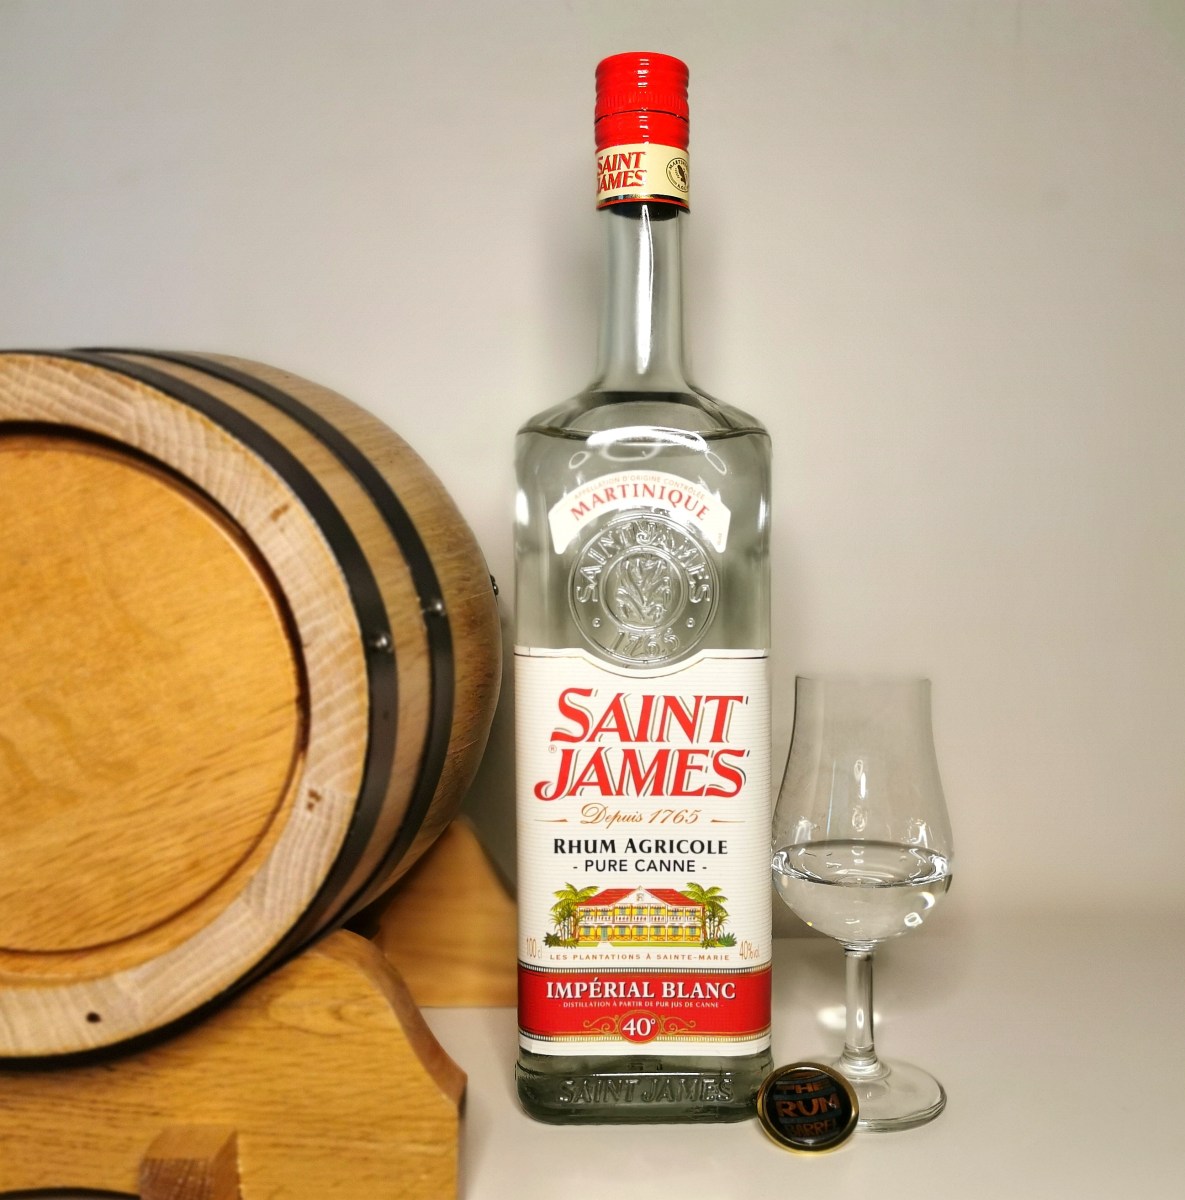 Review: Saint James Imperial Blanc